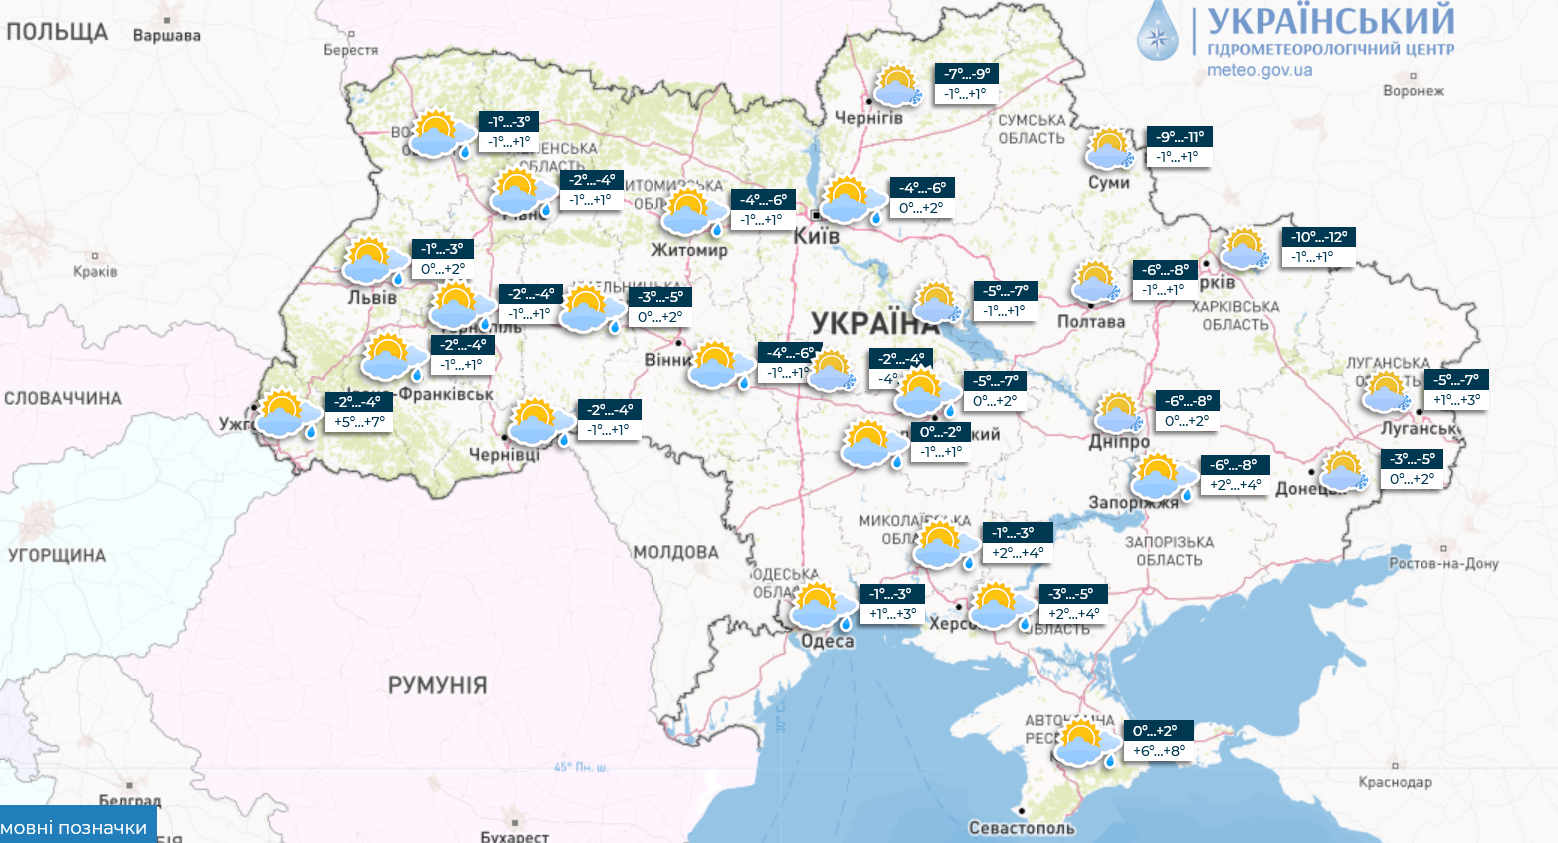 Синоптики предупредили украинцев об ухудшении погоды: подробный прогноз до конца недели. Карта